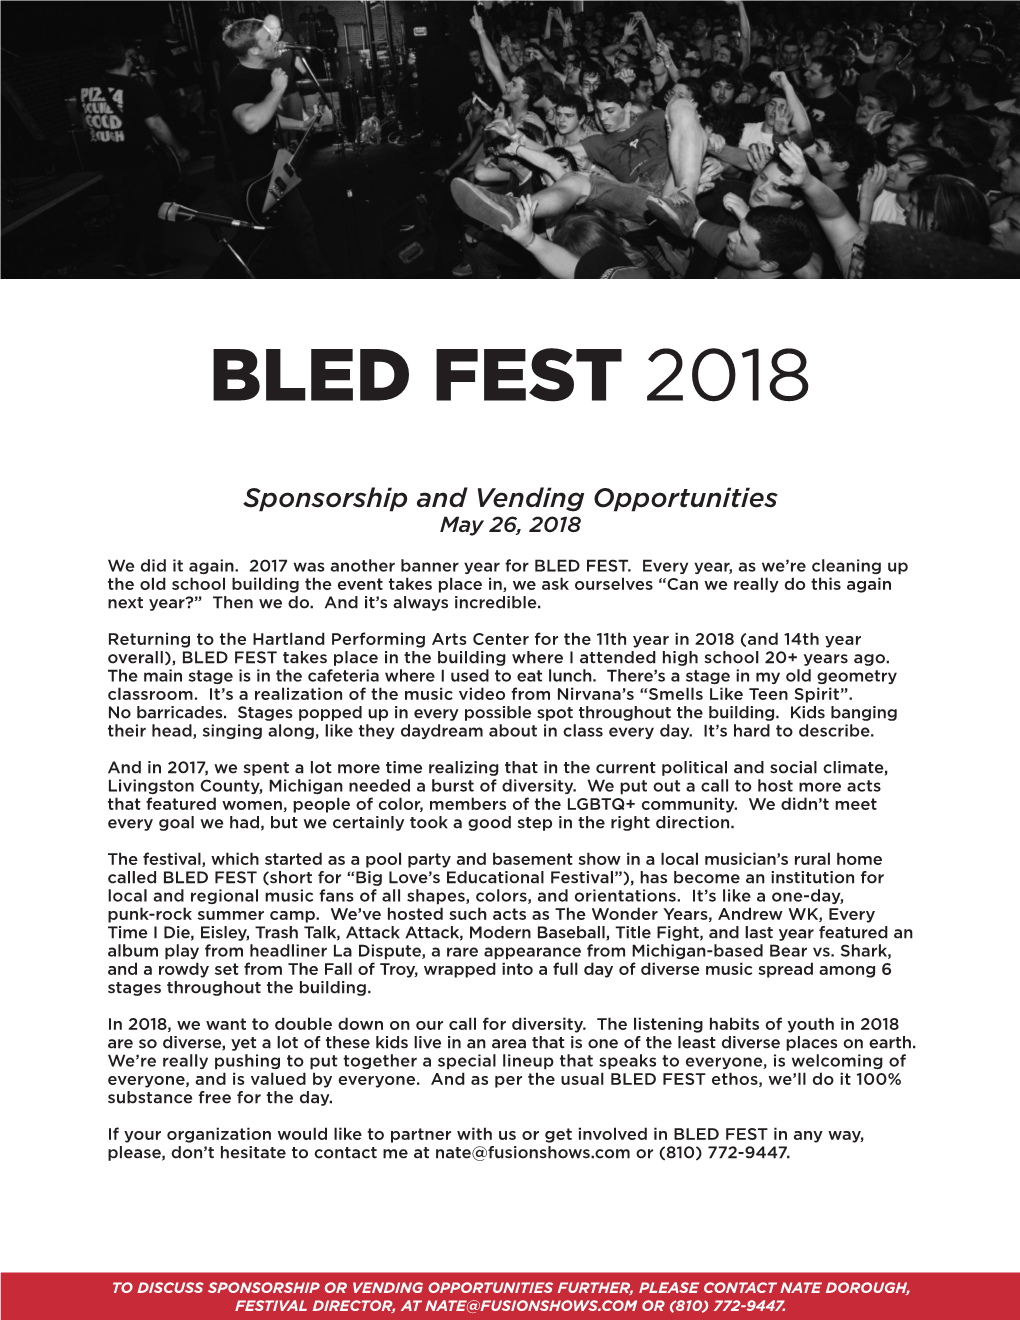 Bled Fest 2018